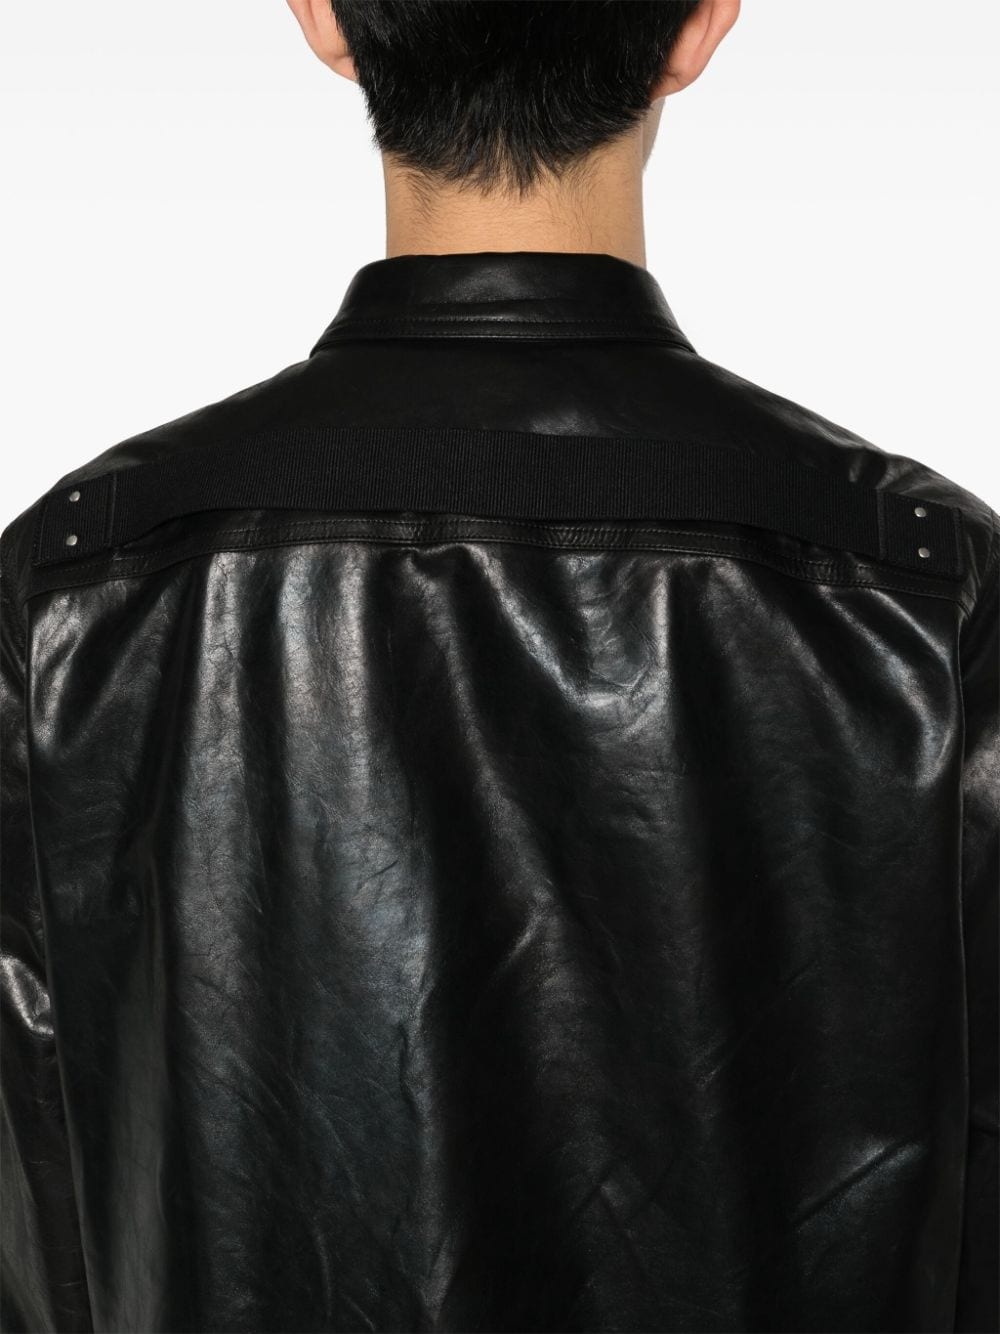 Outershirt leather jacket - 5